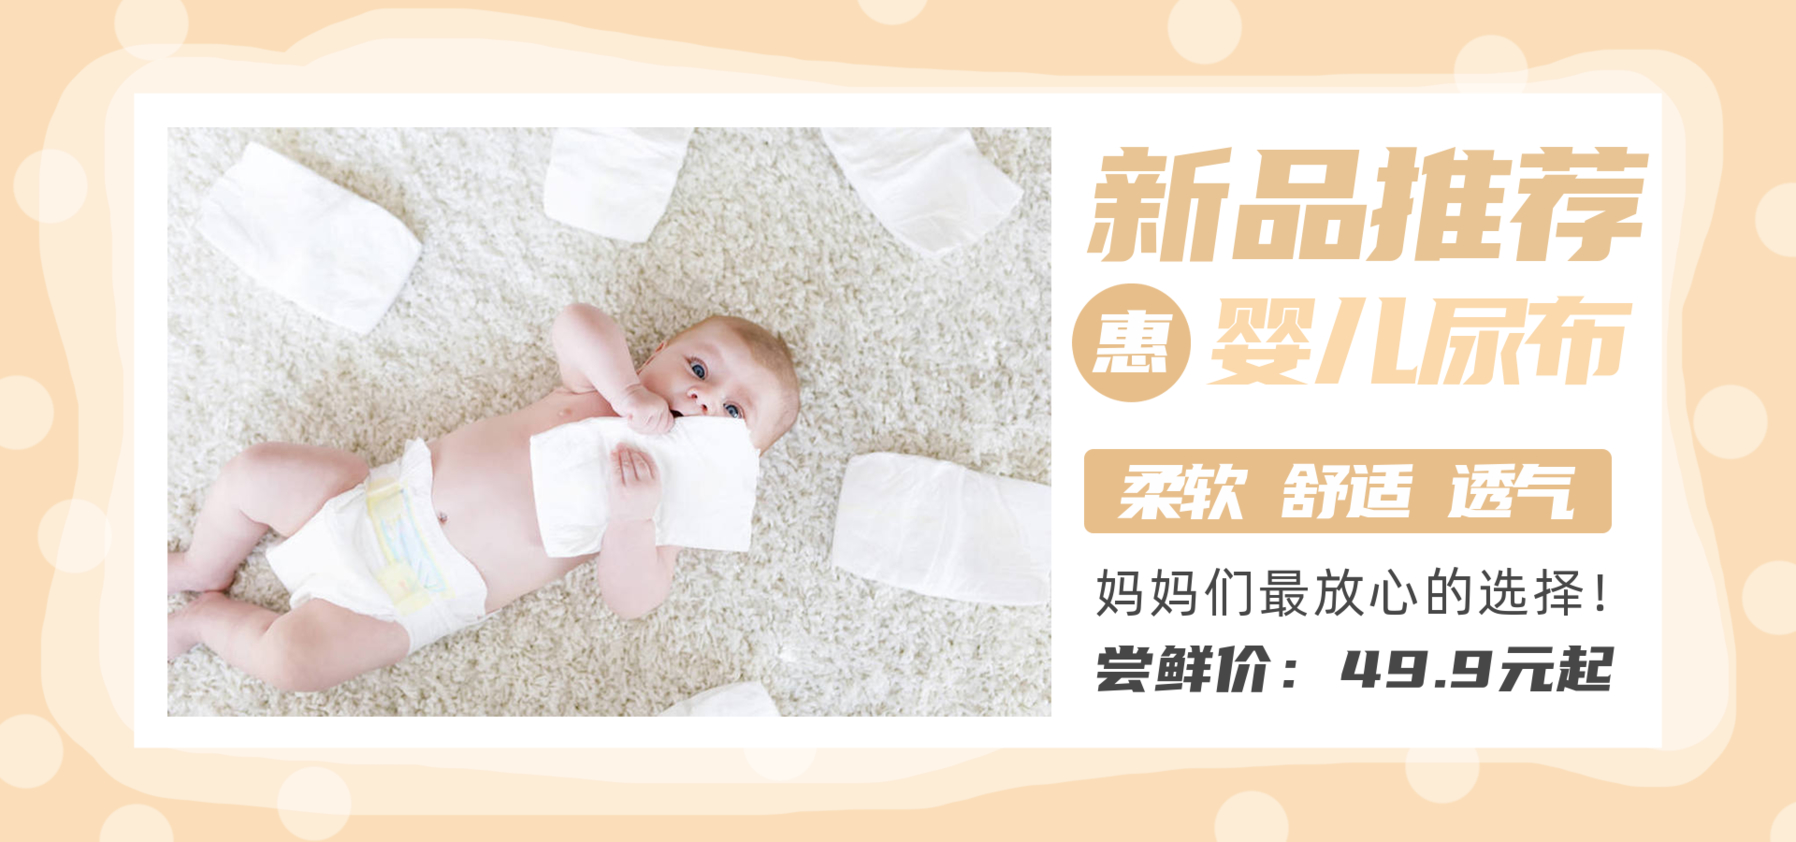 新品推荐婴儿尿布-横